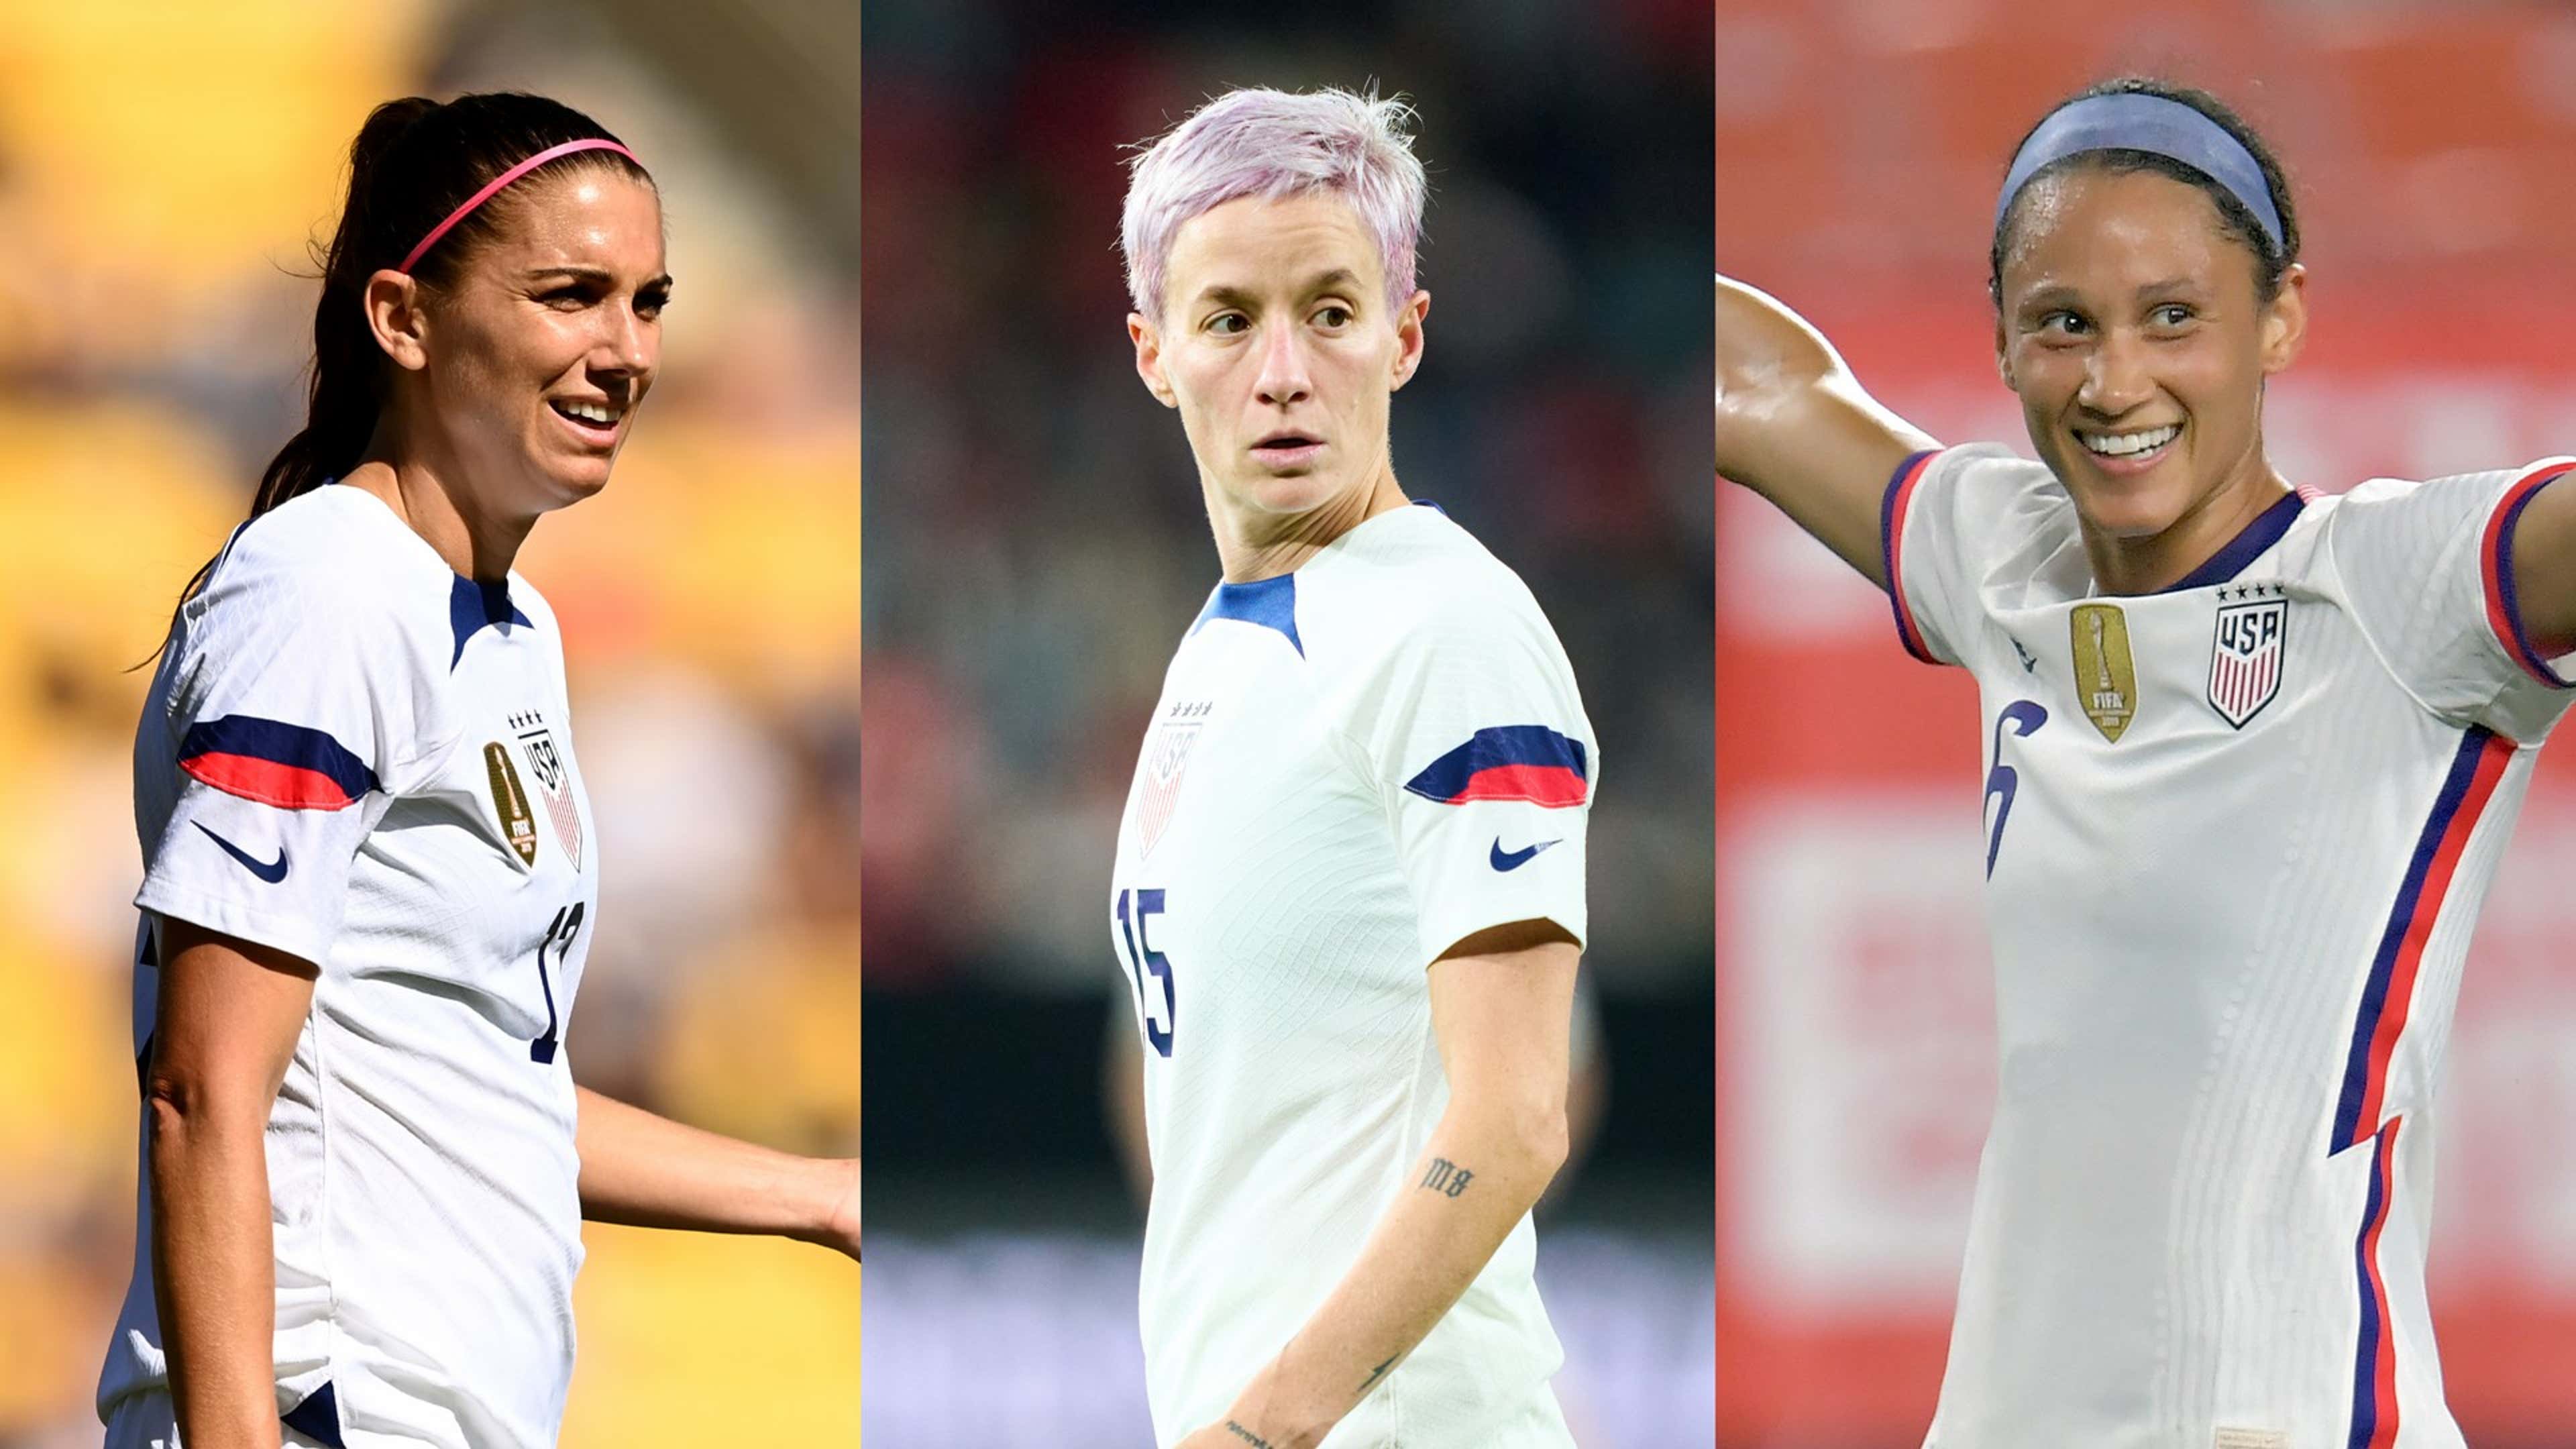 Pro Sports: Should Women Compete Against Men?